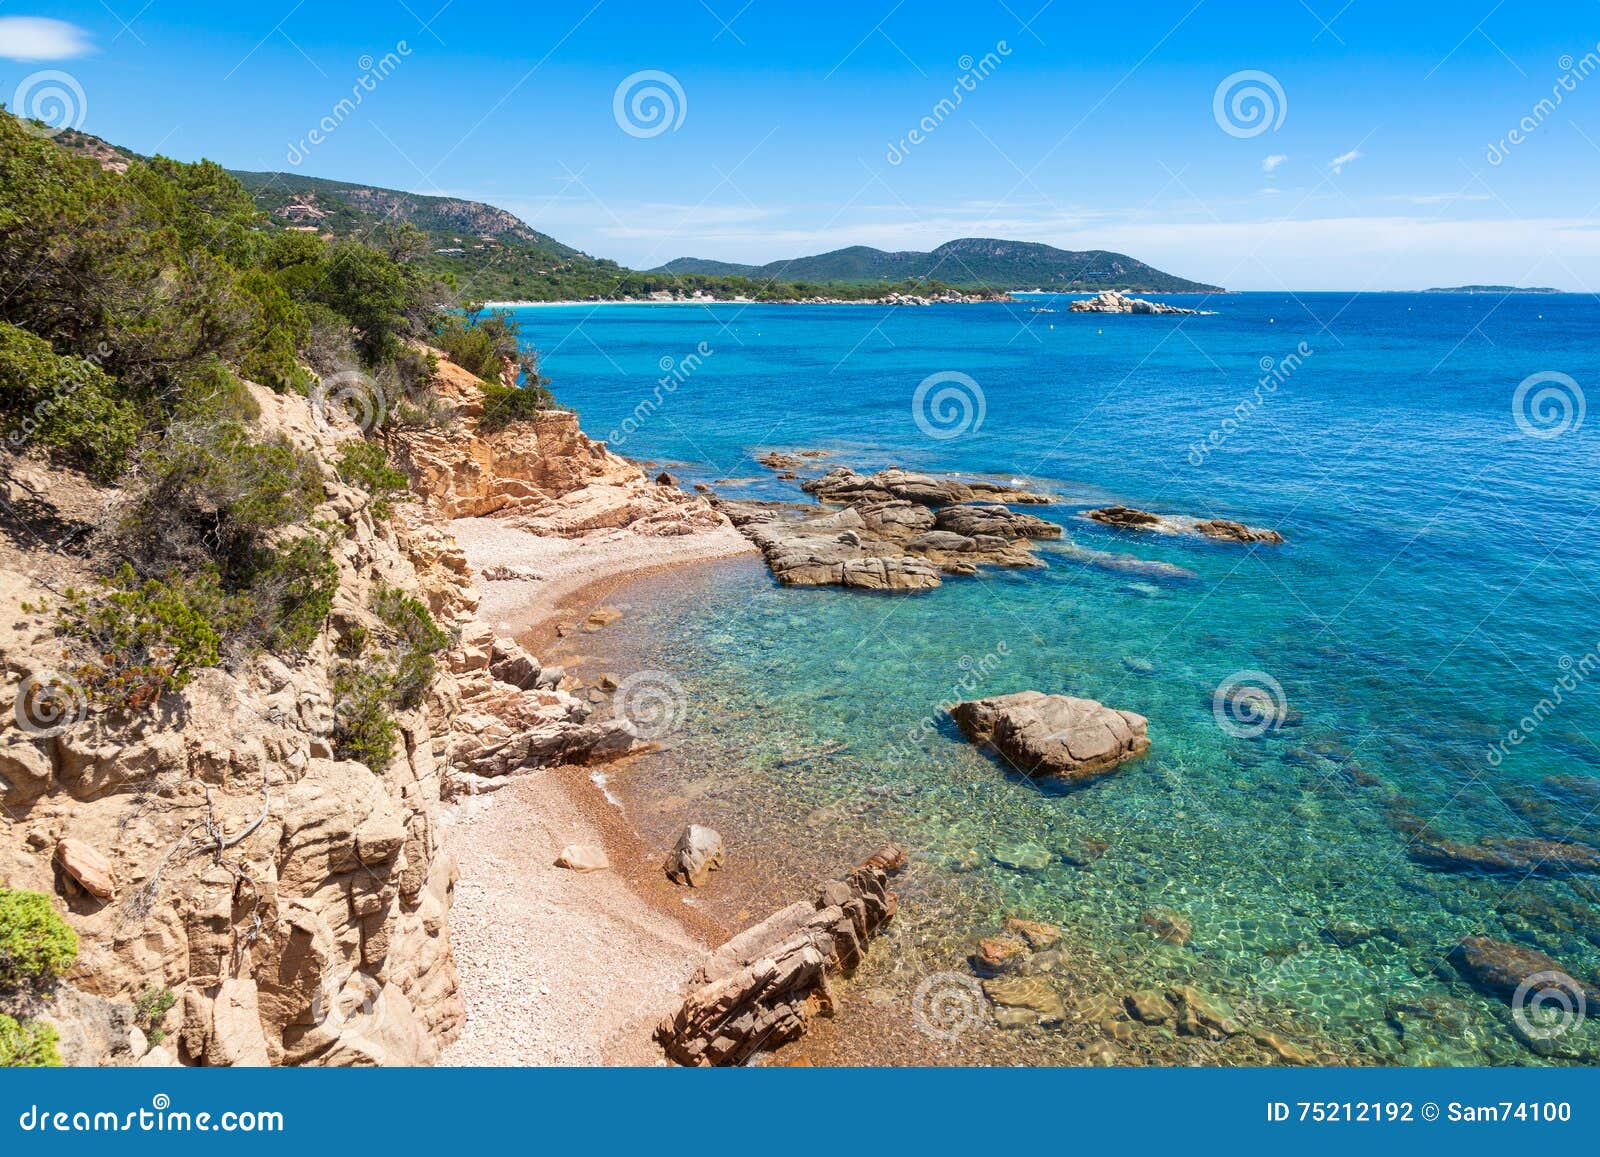 科西嘉岛,海,岩,自然-千叶网